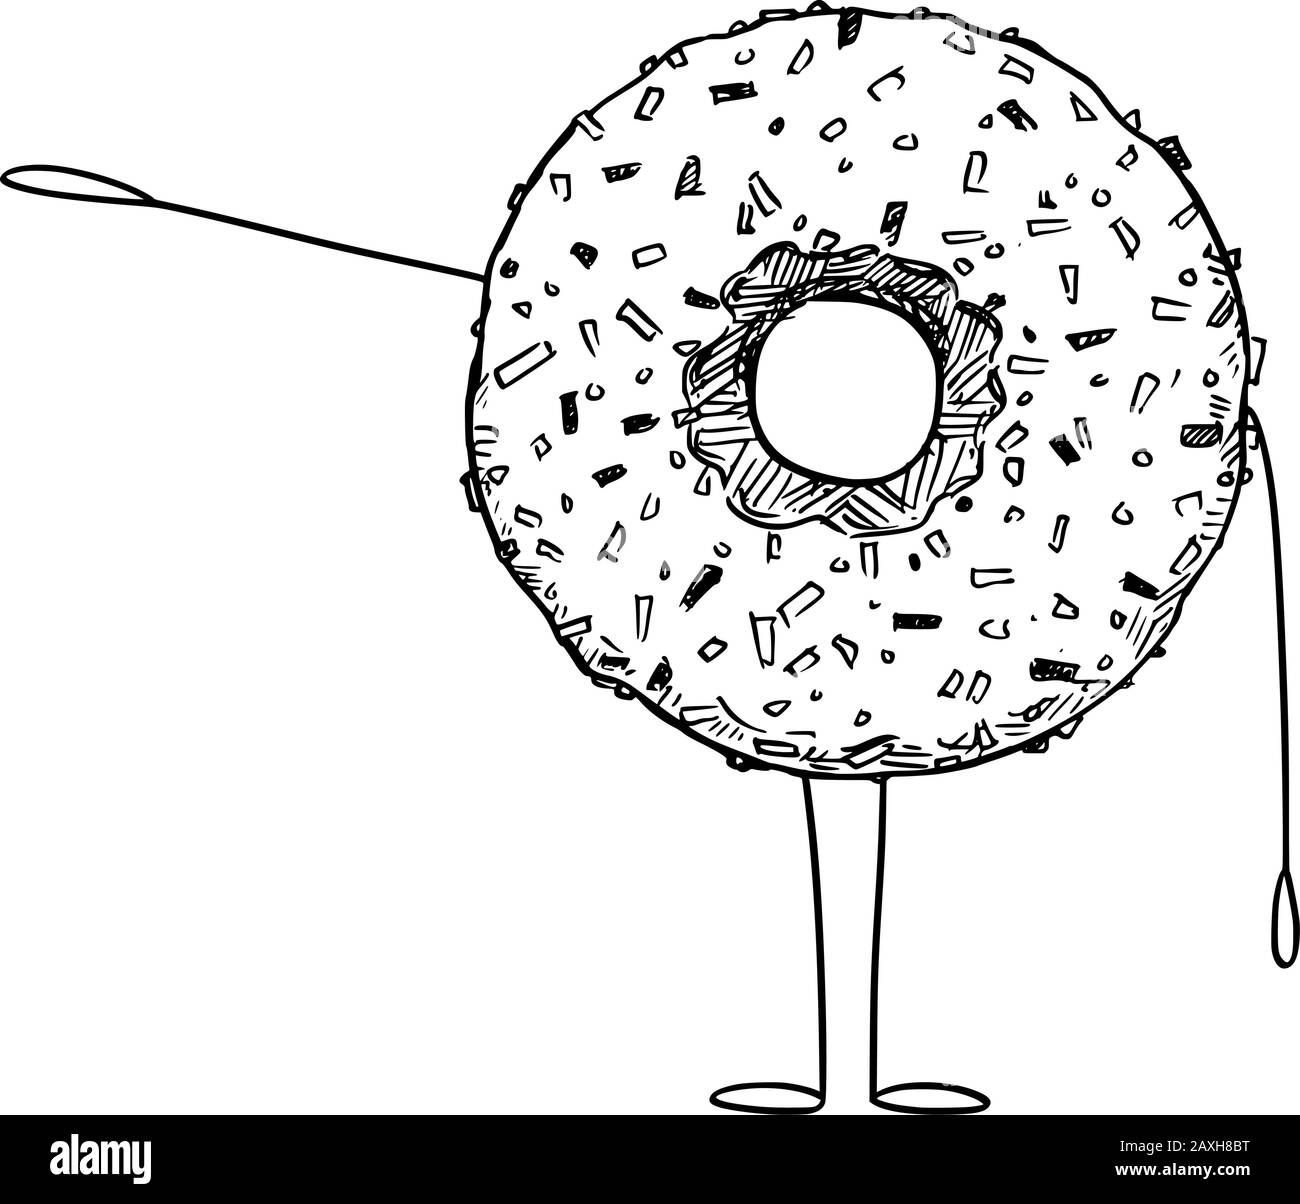 Vektorgrafiken von Cartoon-Donut oder Donut-Zeichen, die etwas von Hand zeigen oder darauf zeigen. Gesunder Lebensstil und Werbung für Junk- oder Backwaren oder Marketingdesign. Stock Vektor